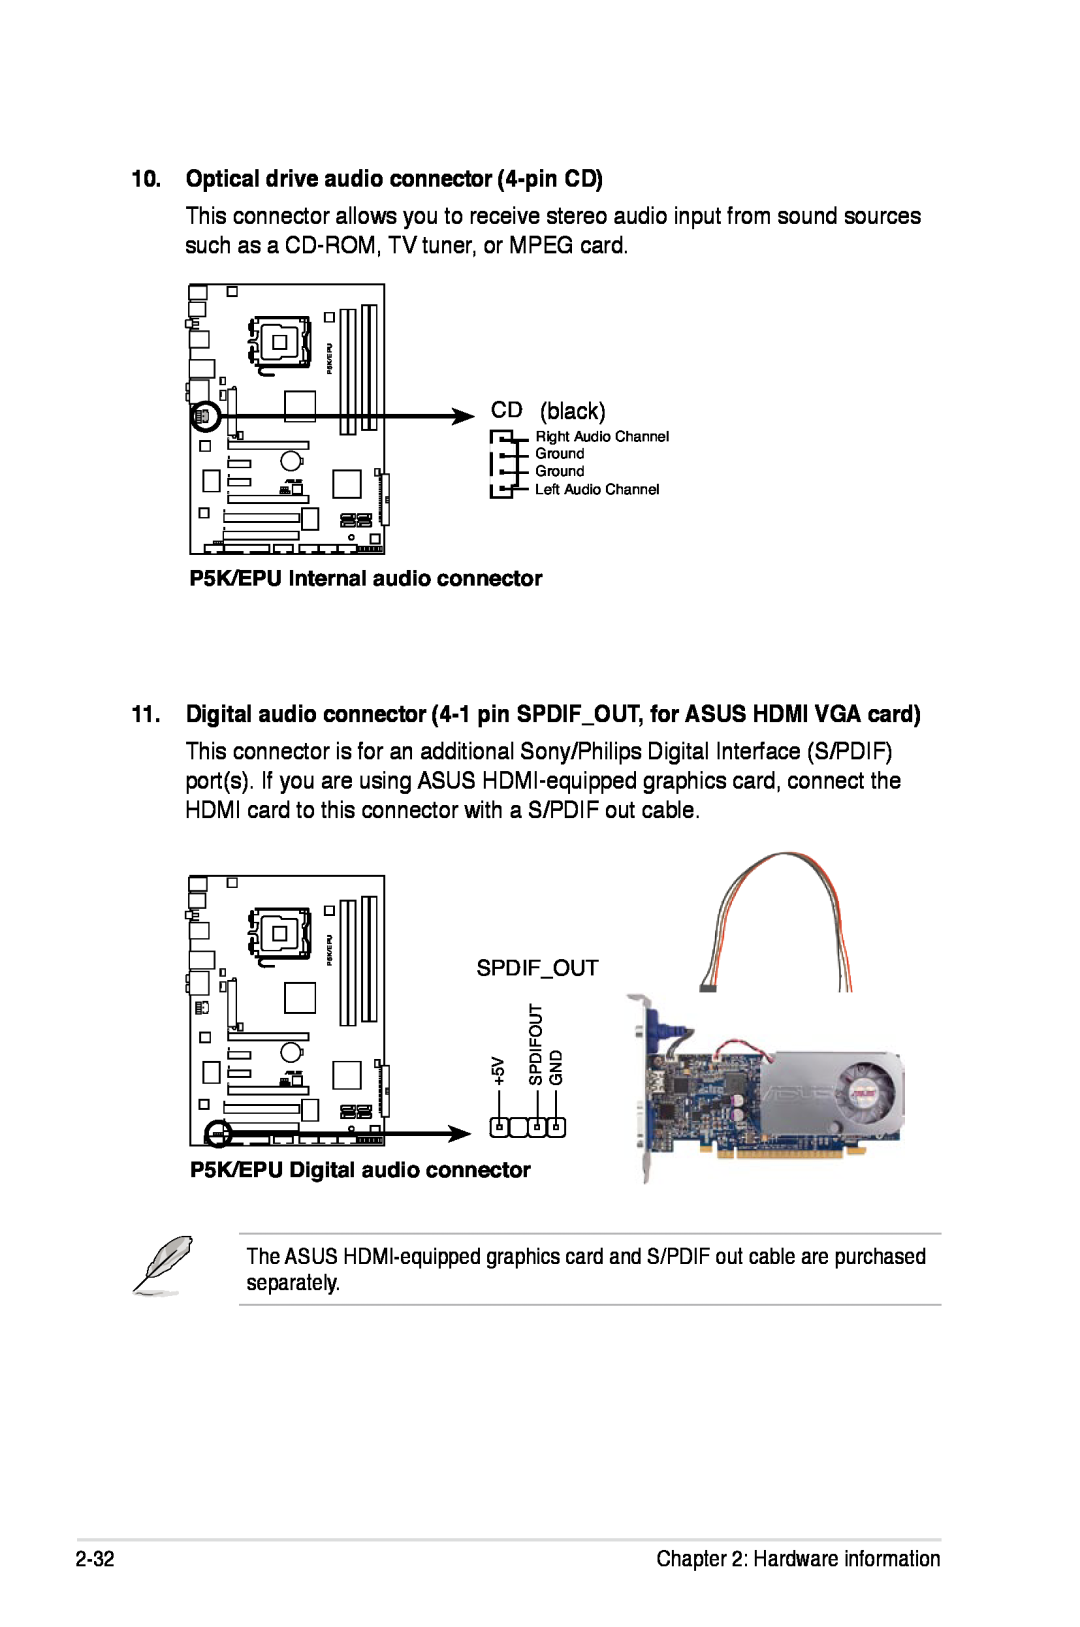 Asus P5K/EPU Optical drive audio connector 4-pin CD, Digital audio connector 4-1 pin SPDIFOUT, for ASUS HDMI VGA card 